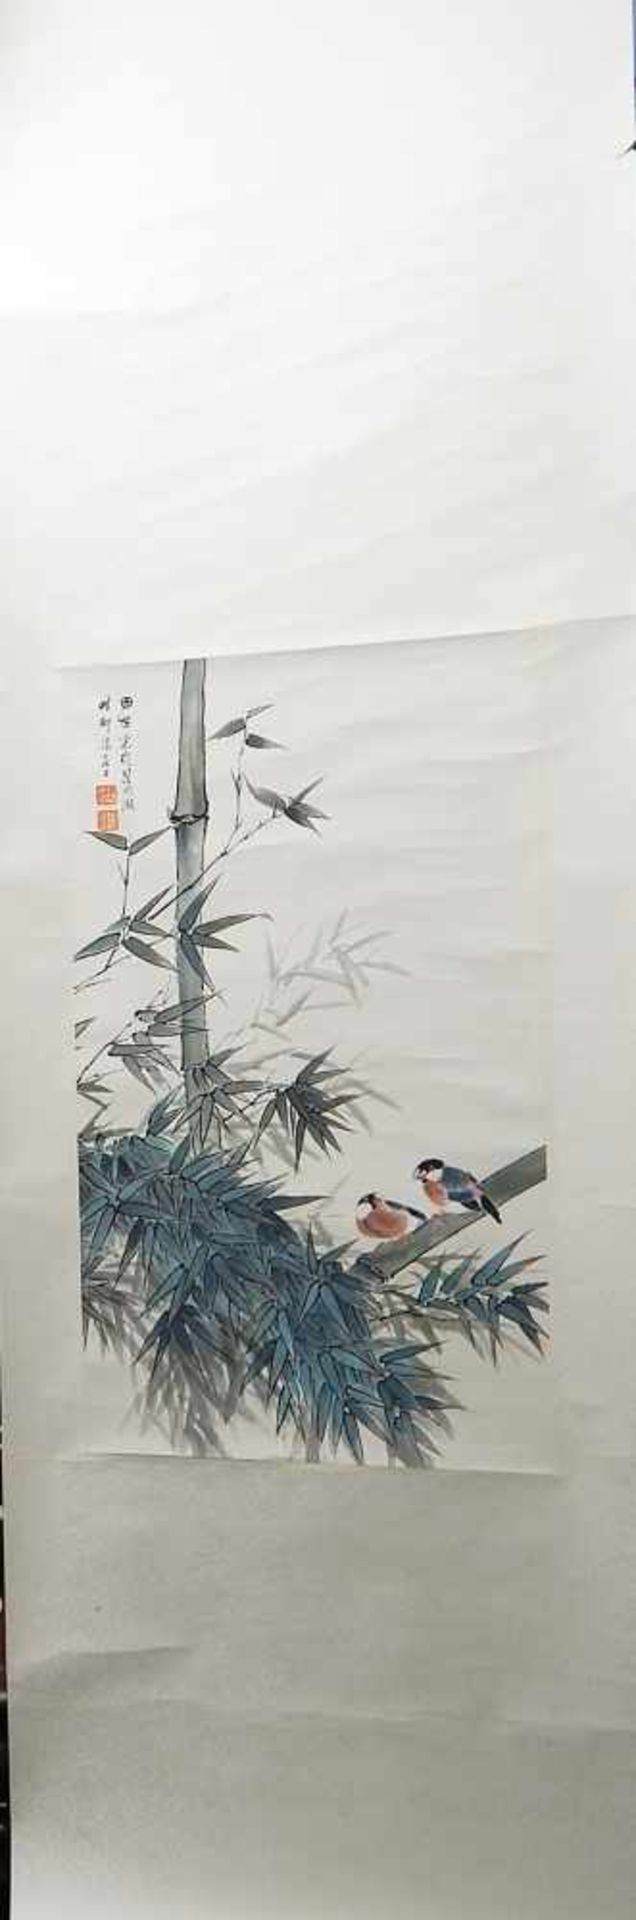 Rollbild, Darstellung von 2 Vögeln auf einem Bambus, Aquarell und Tinte, vom Künstler signiert und